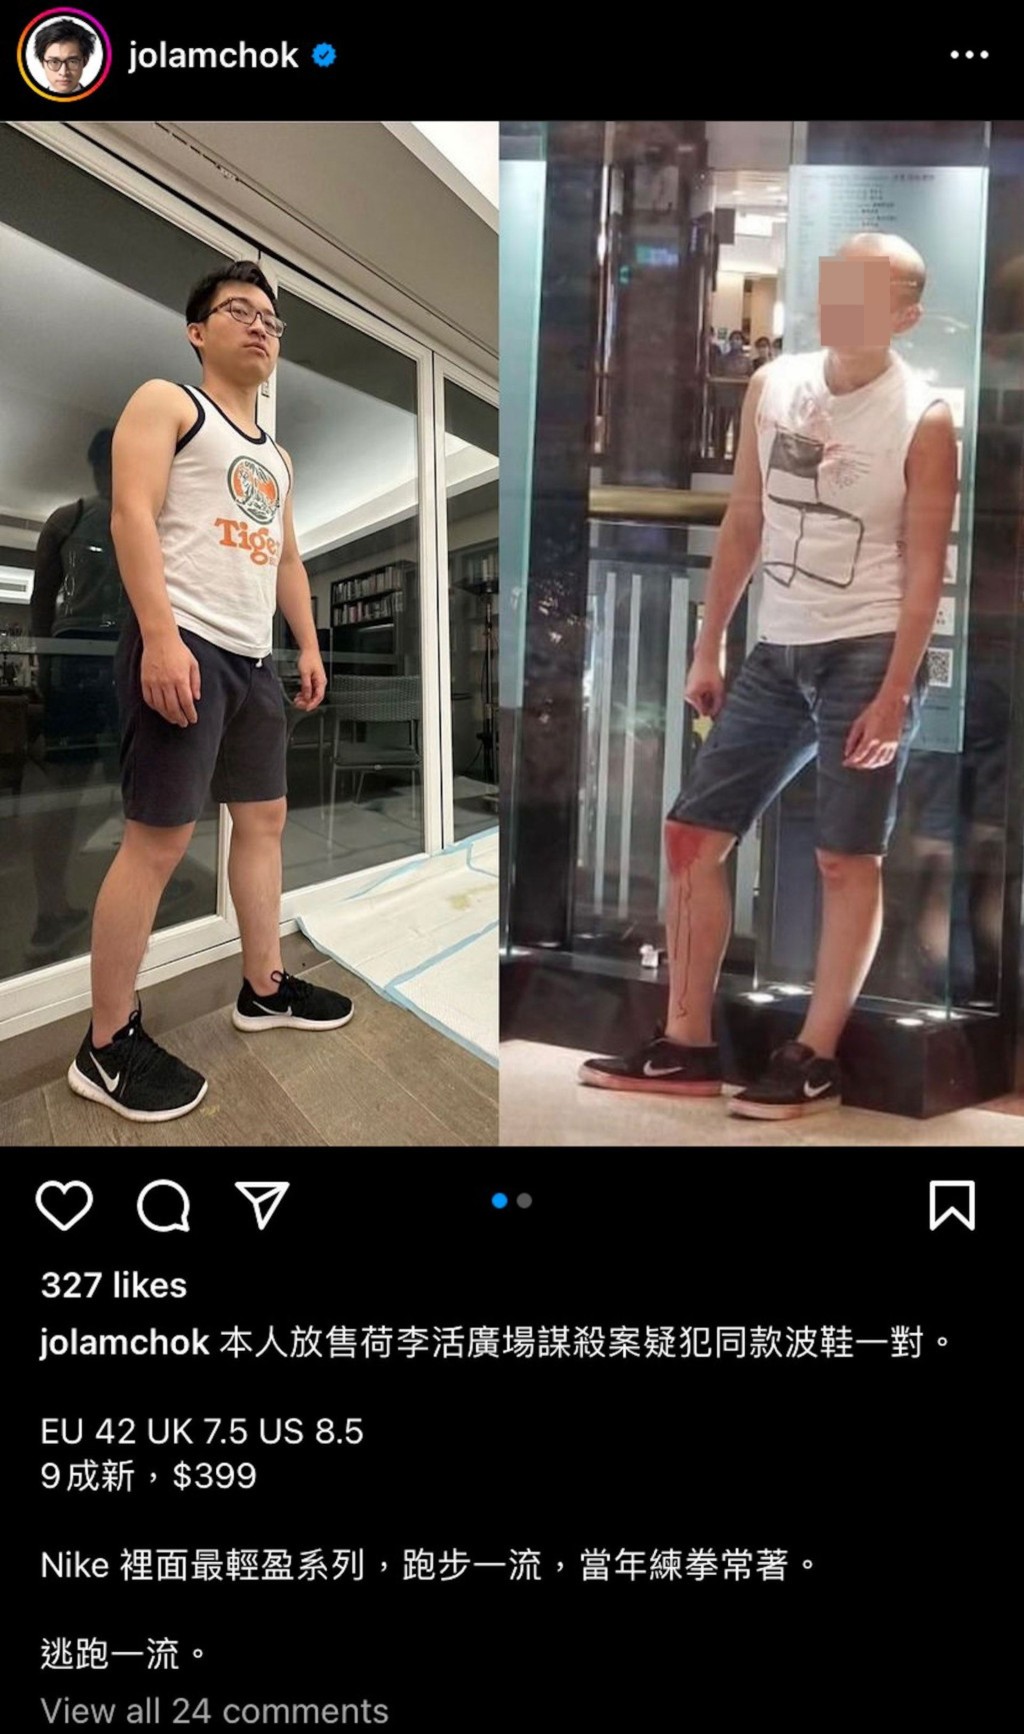 林作日前于IG上载与荷里活广场凶杀案疑犯打扮相似的相片，声称要放售同款波鞋，抽水抽著镪水。